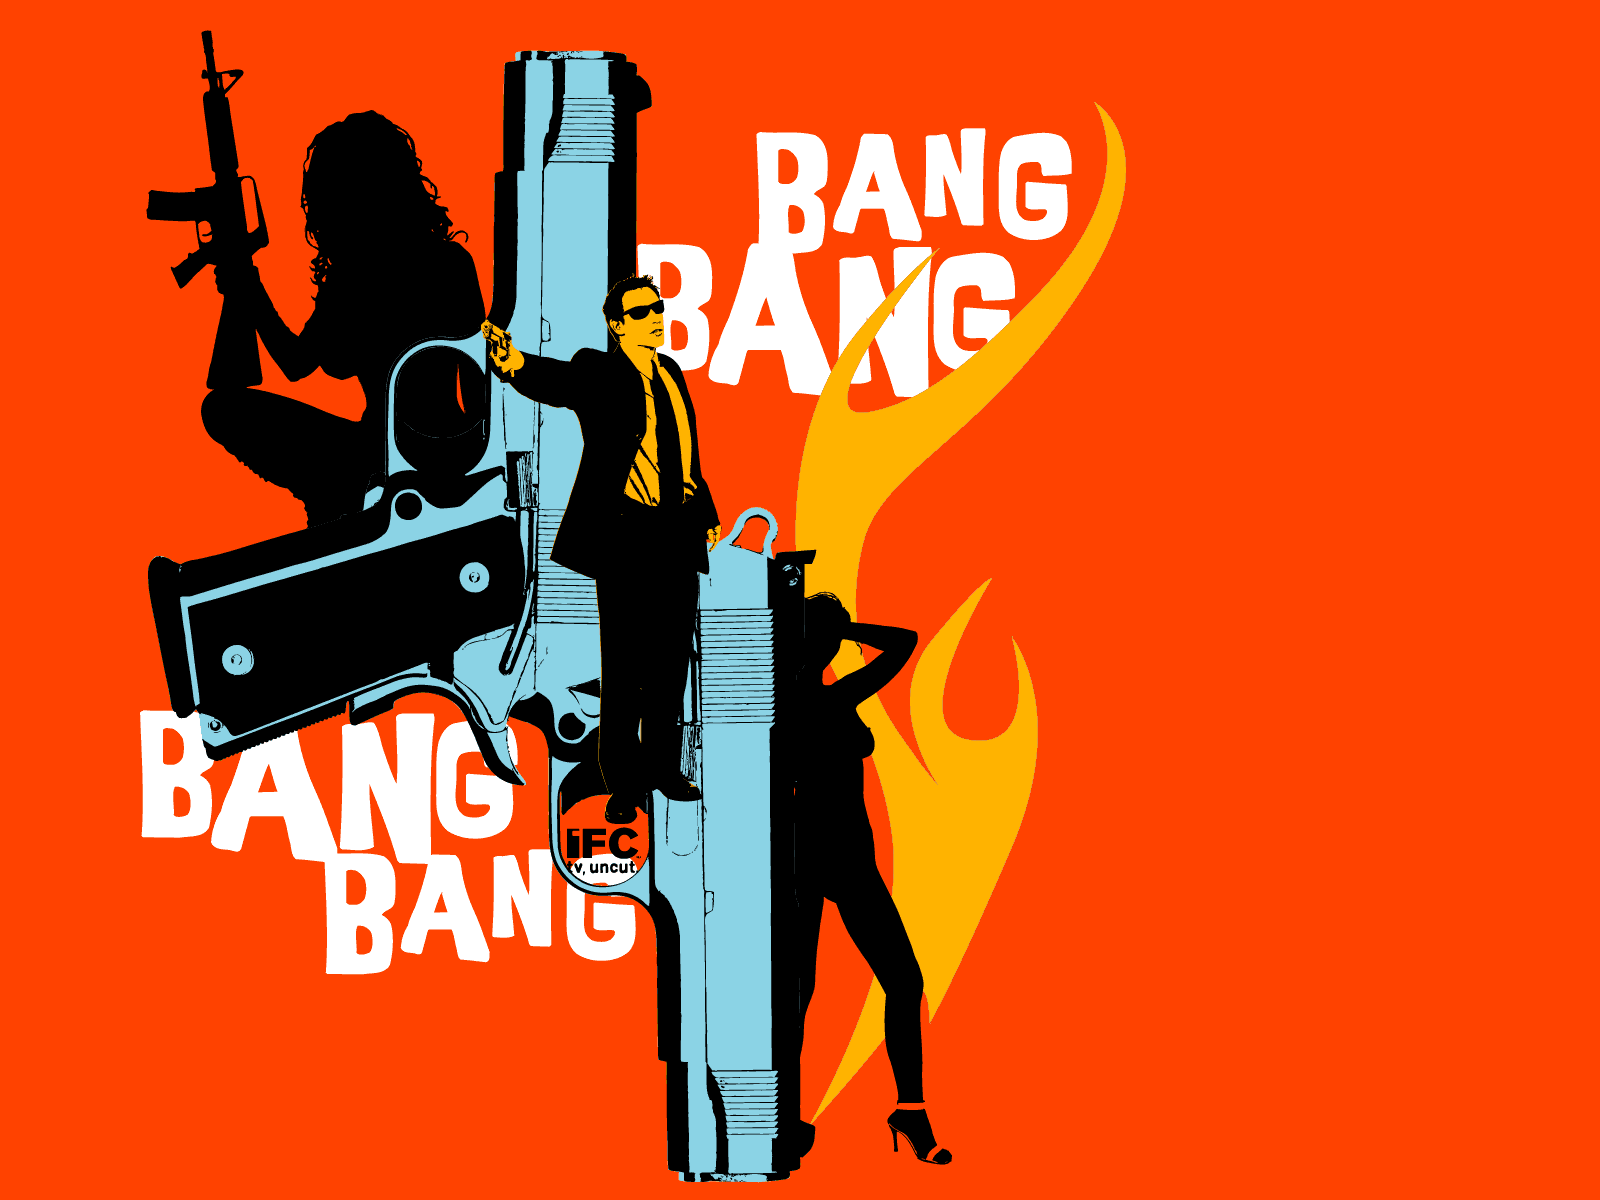 Bang. Ban ban. G-ba. Bang картинка.